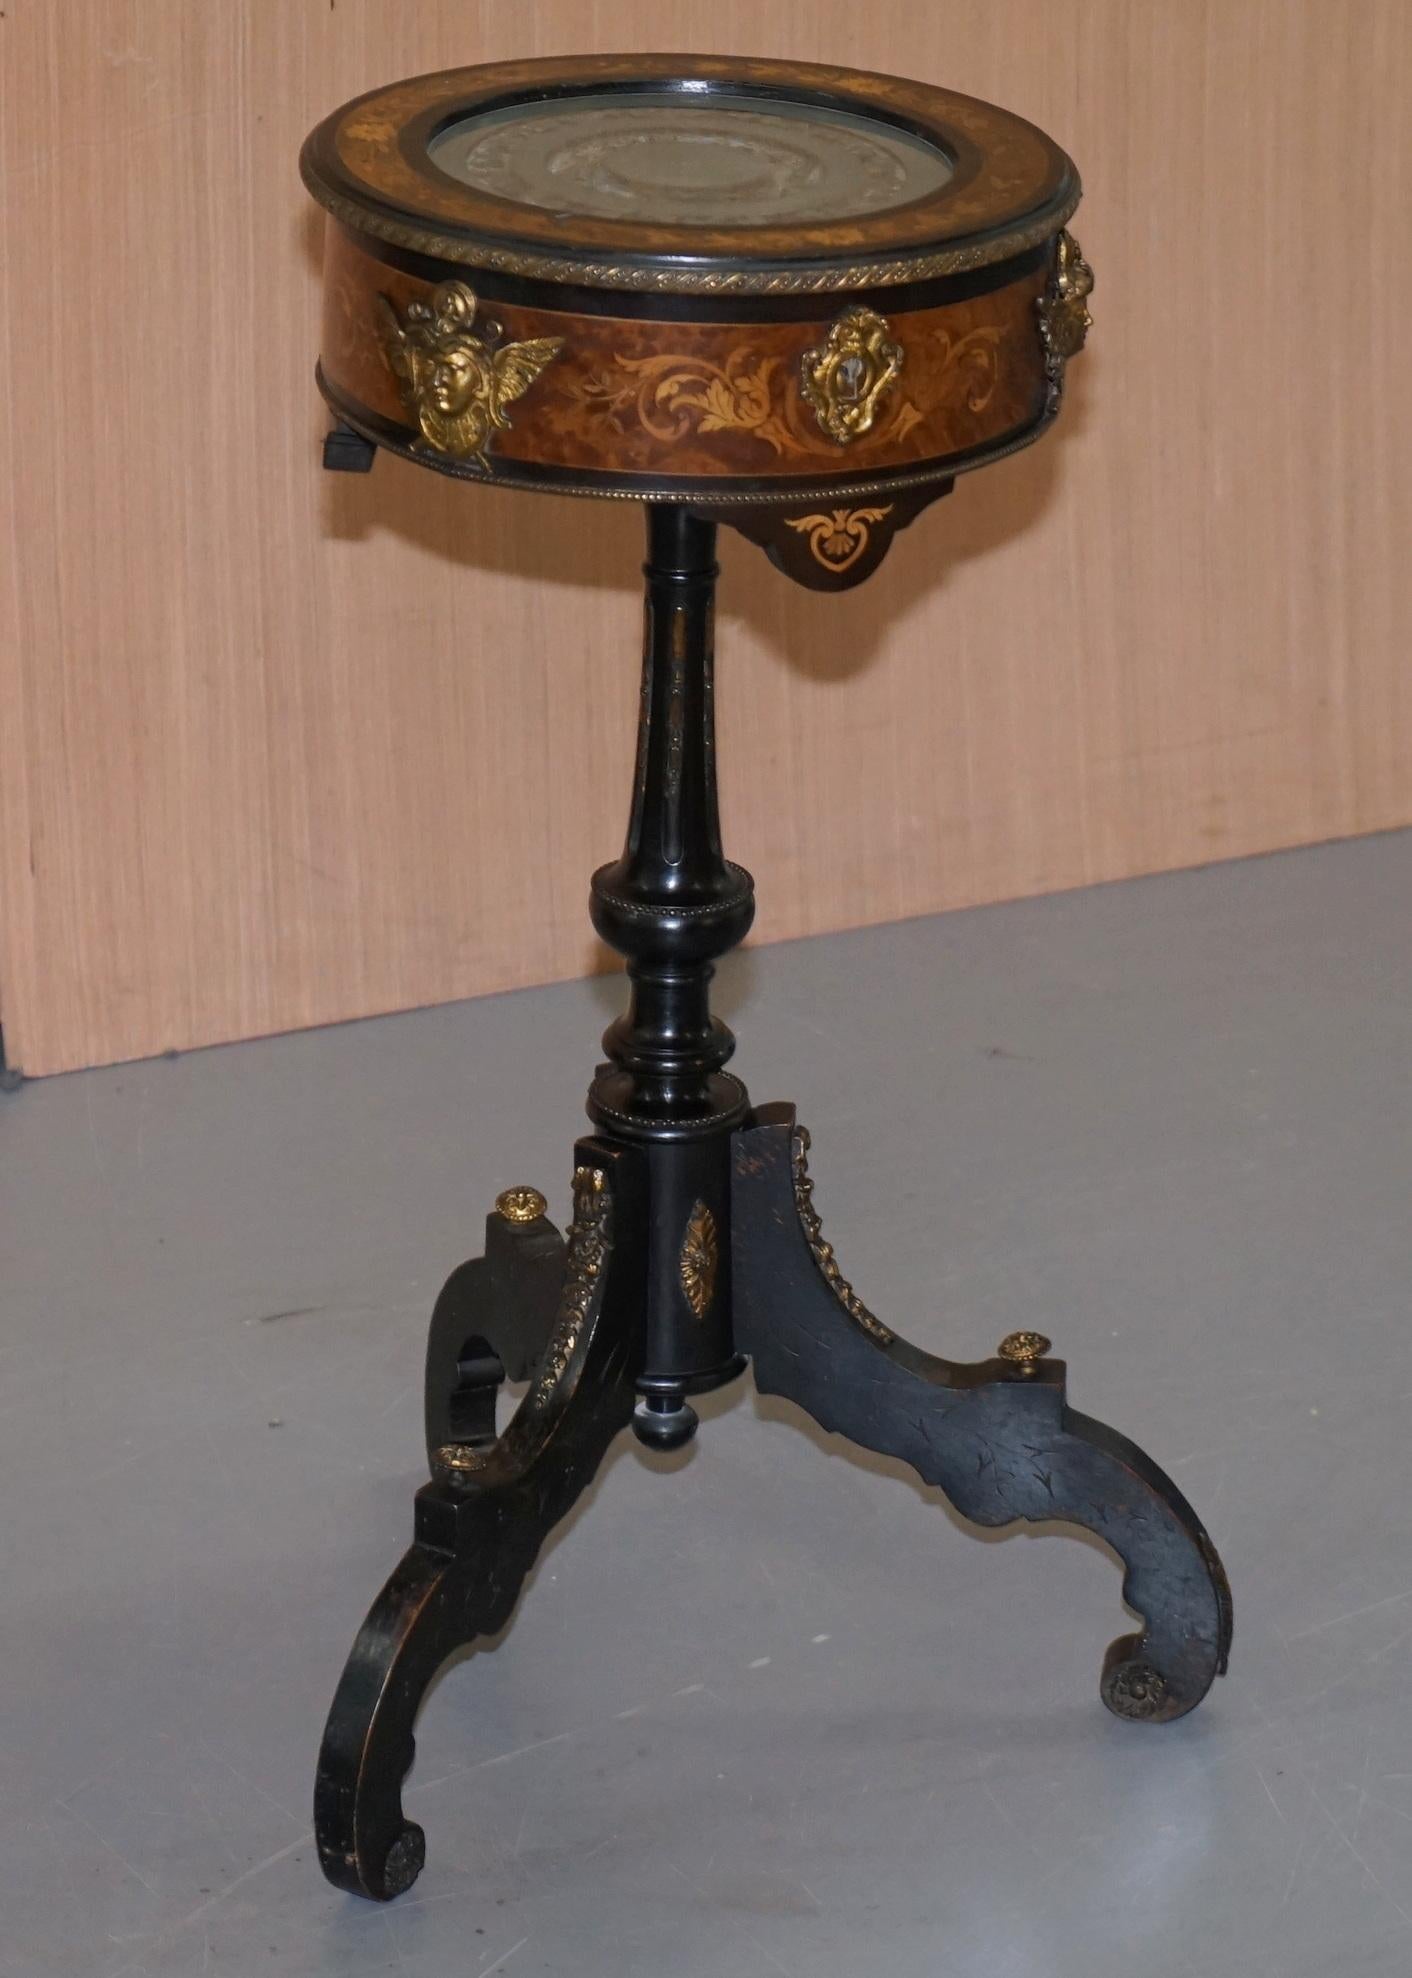 Nous avons le plaisir de vous proposer cette superbe table d'appoint de style Louis XVI Bijouterie Vitrine du 18ème siècle avec sa doublure en soie d'origine

Une table vraiment étonnante et remarquable, la patine du bois est d'époque et